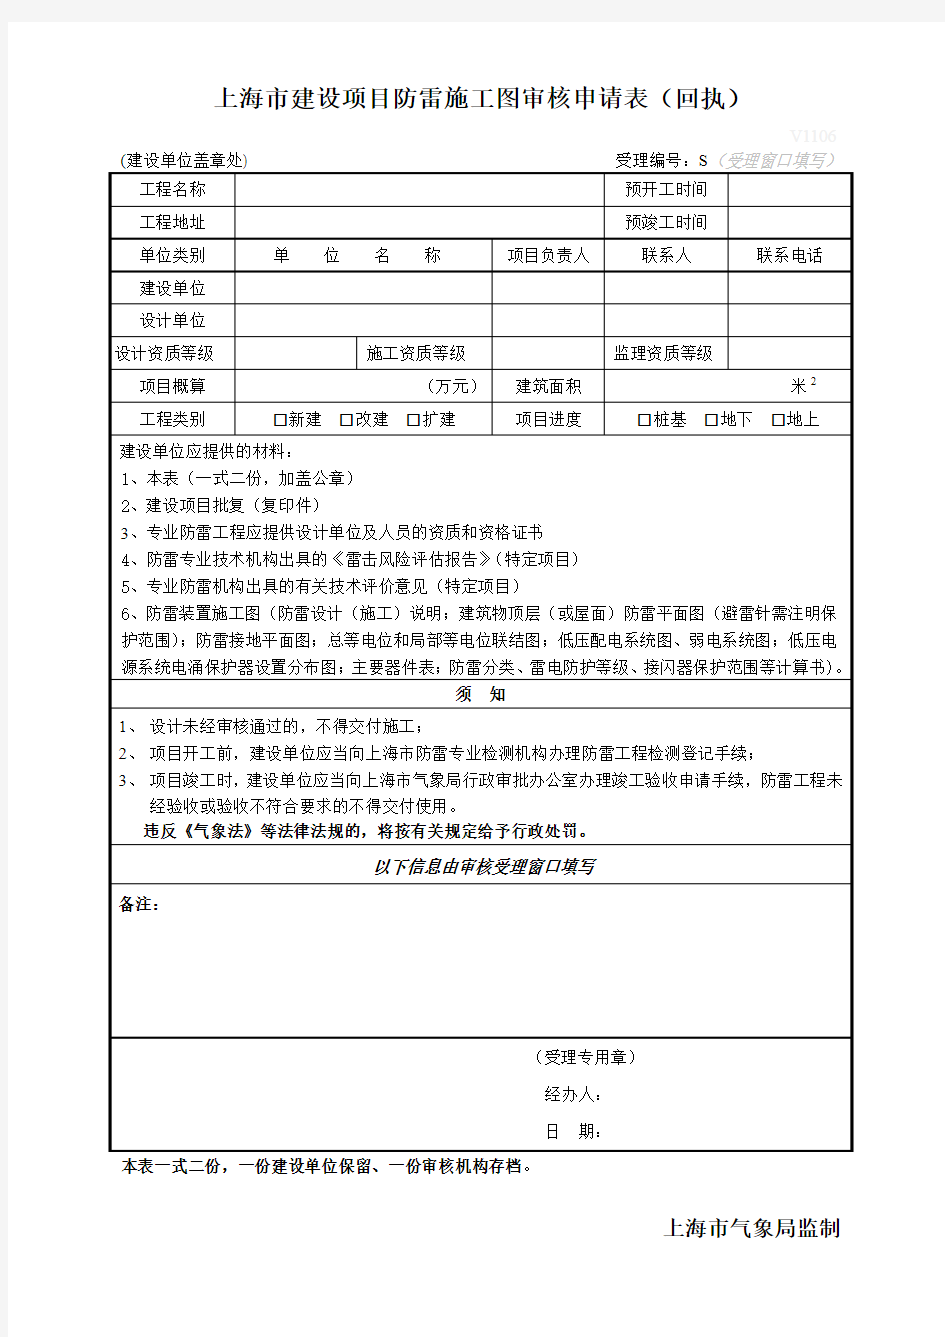 上海市建设项目防雷施工图审核申请表(回执)